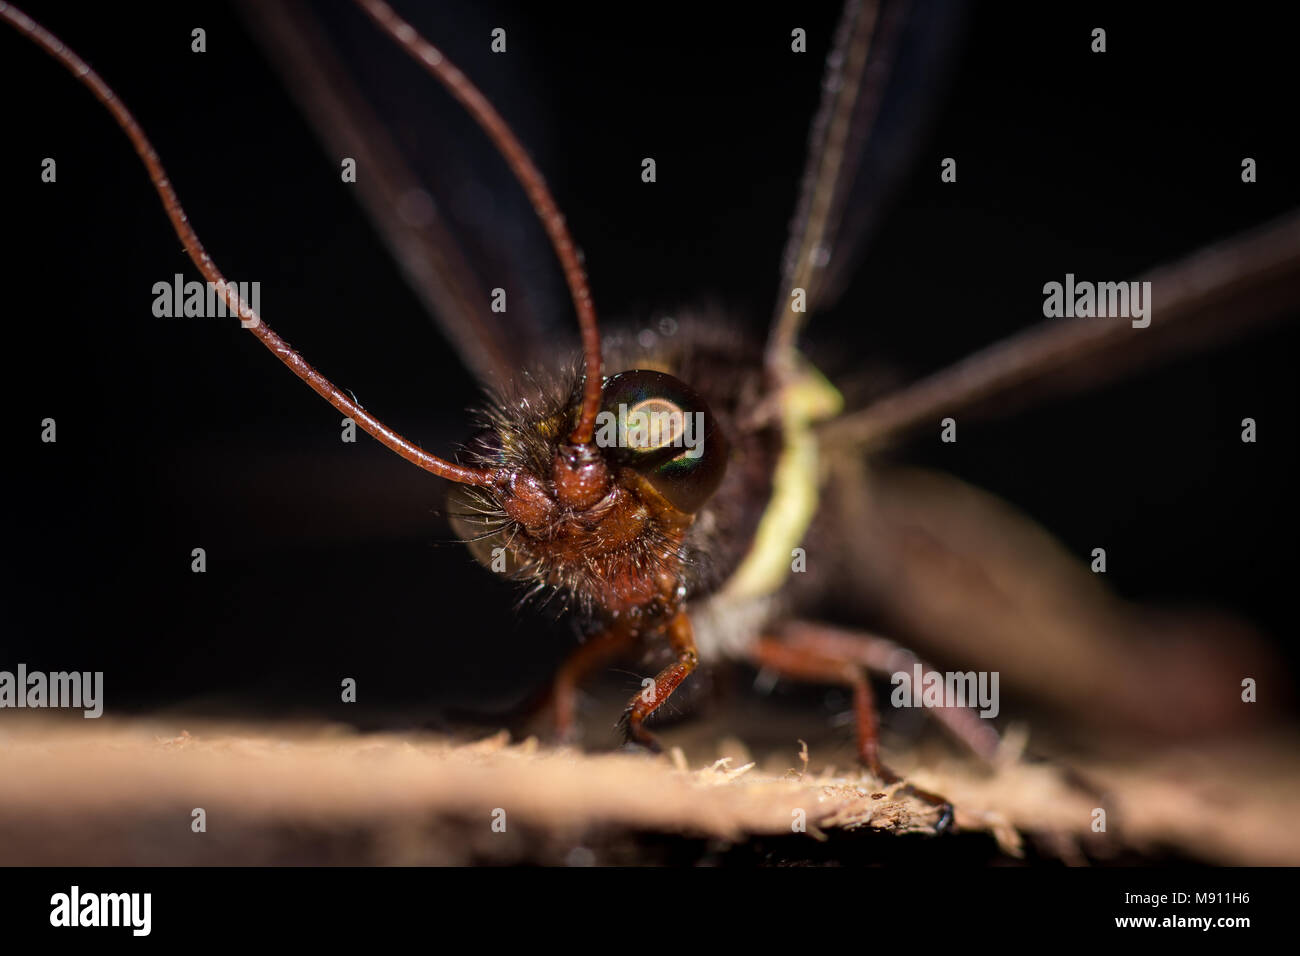 Close-up Makro Foto von Gelben Owlfly wissenschaftlich Suhpalacsa flavipes eine beängstigende Insekt im Makro Detail angesehen. Einzigartige Tierwelt insekt Stockfoto